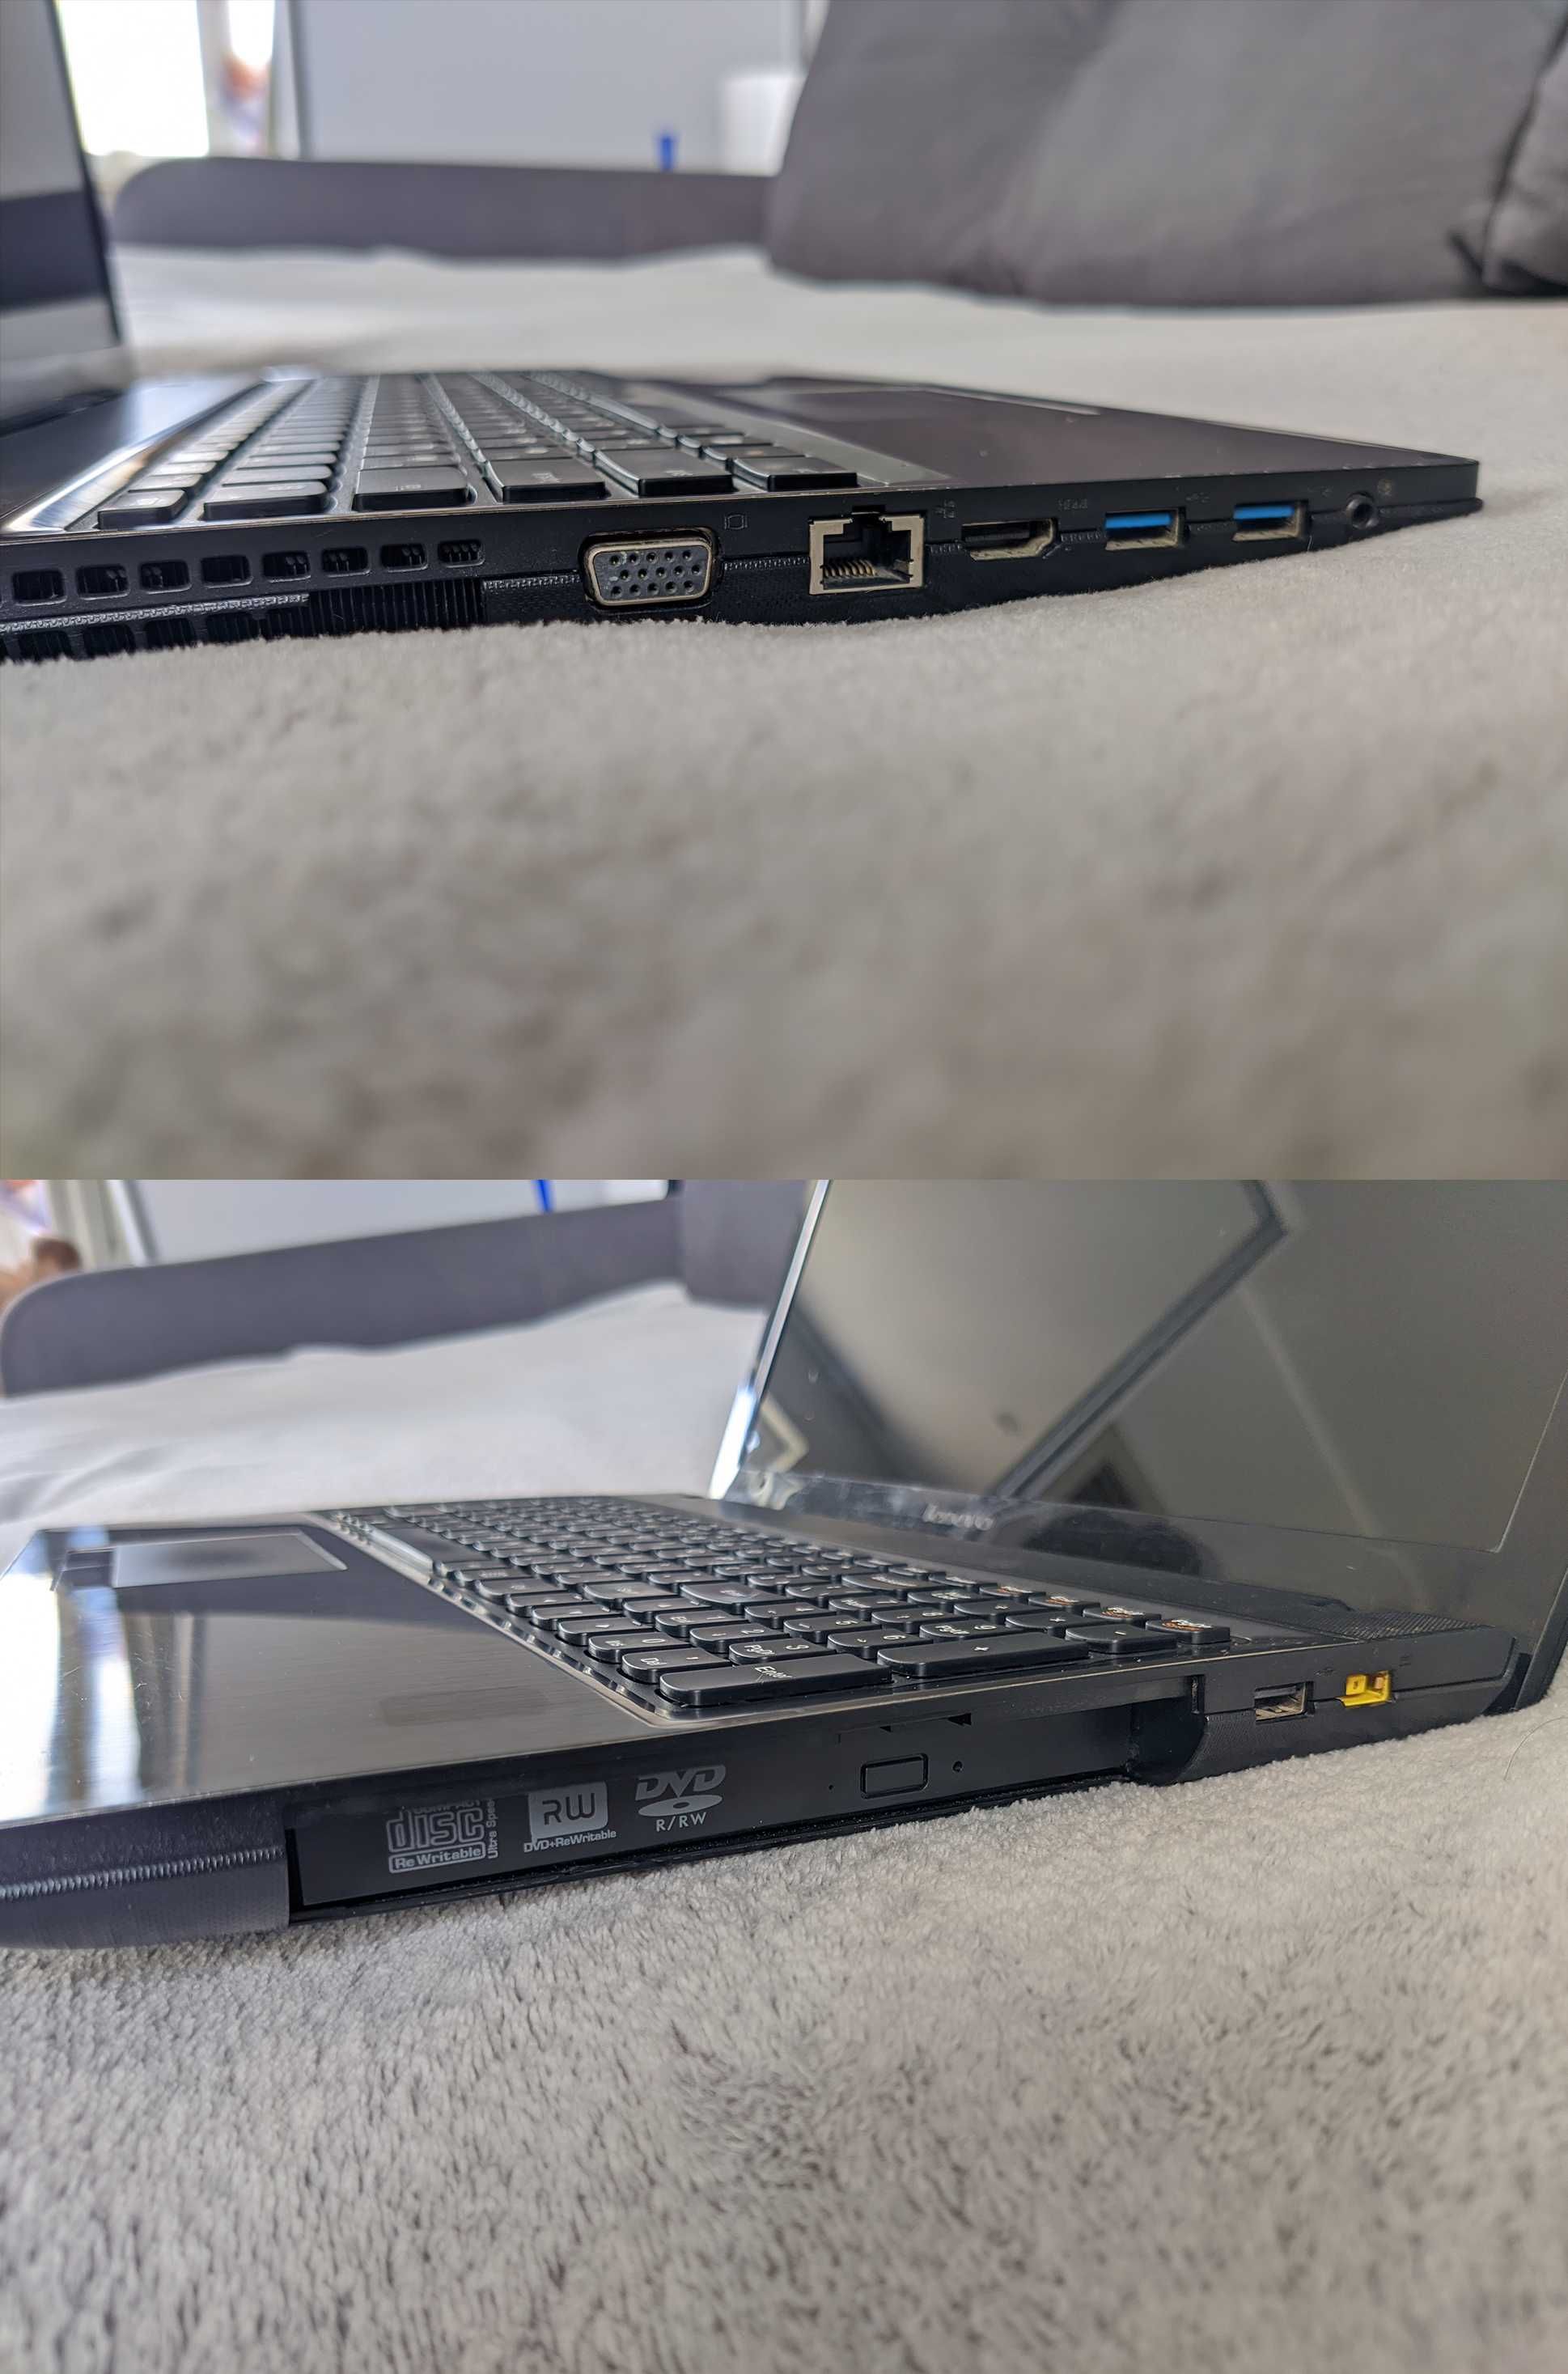 Ноутбук Lenovo G510 Intel 3550M (15.6") 4 GB DDR3 500 GB Laptop нетбук